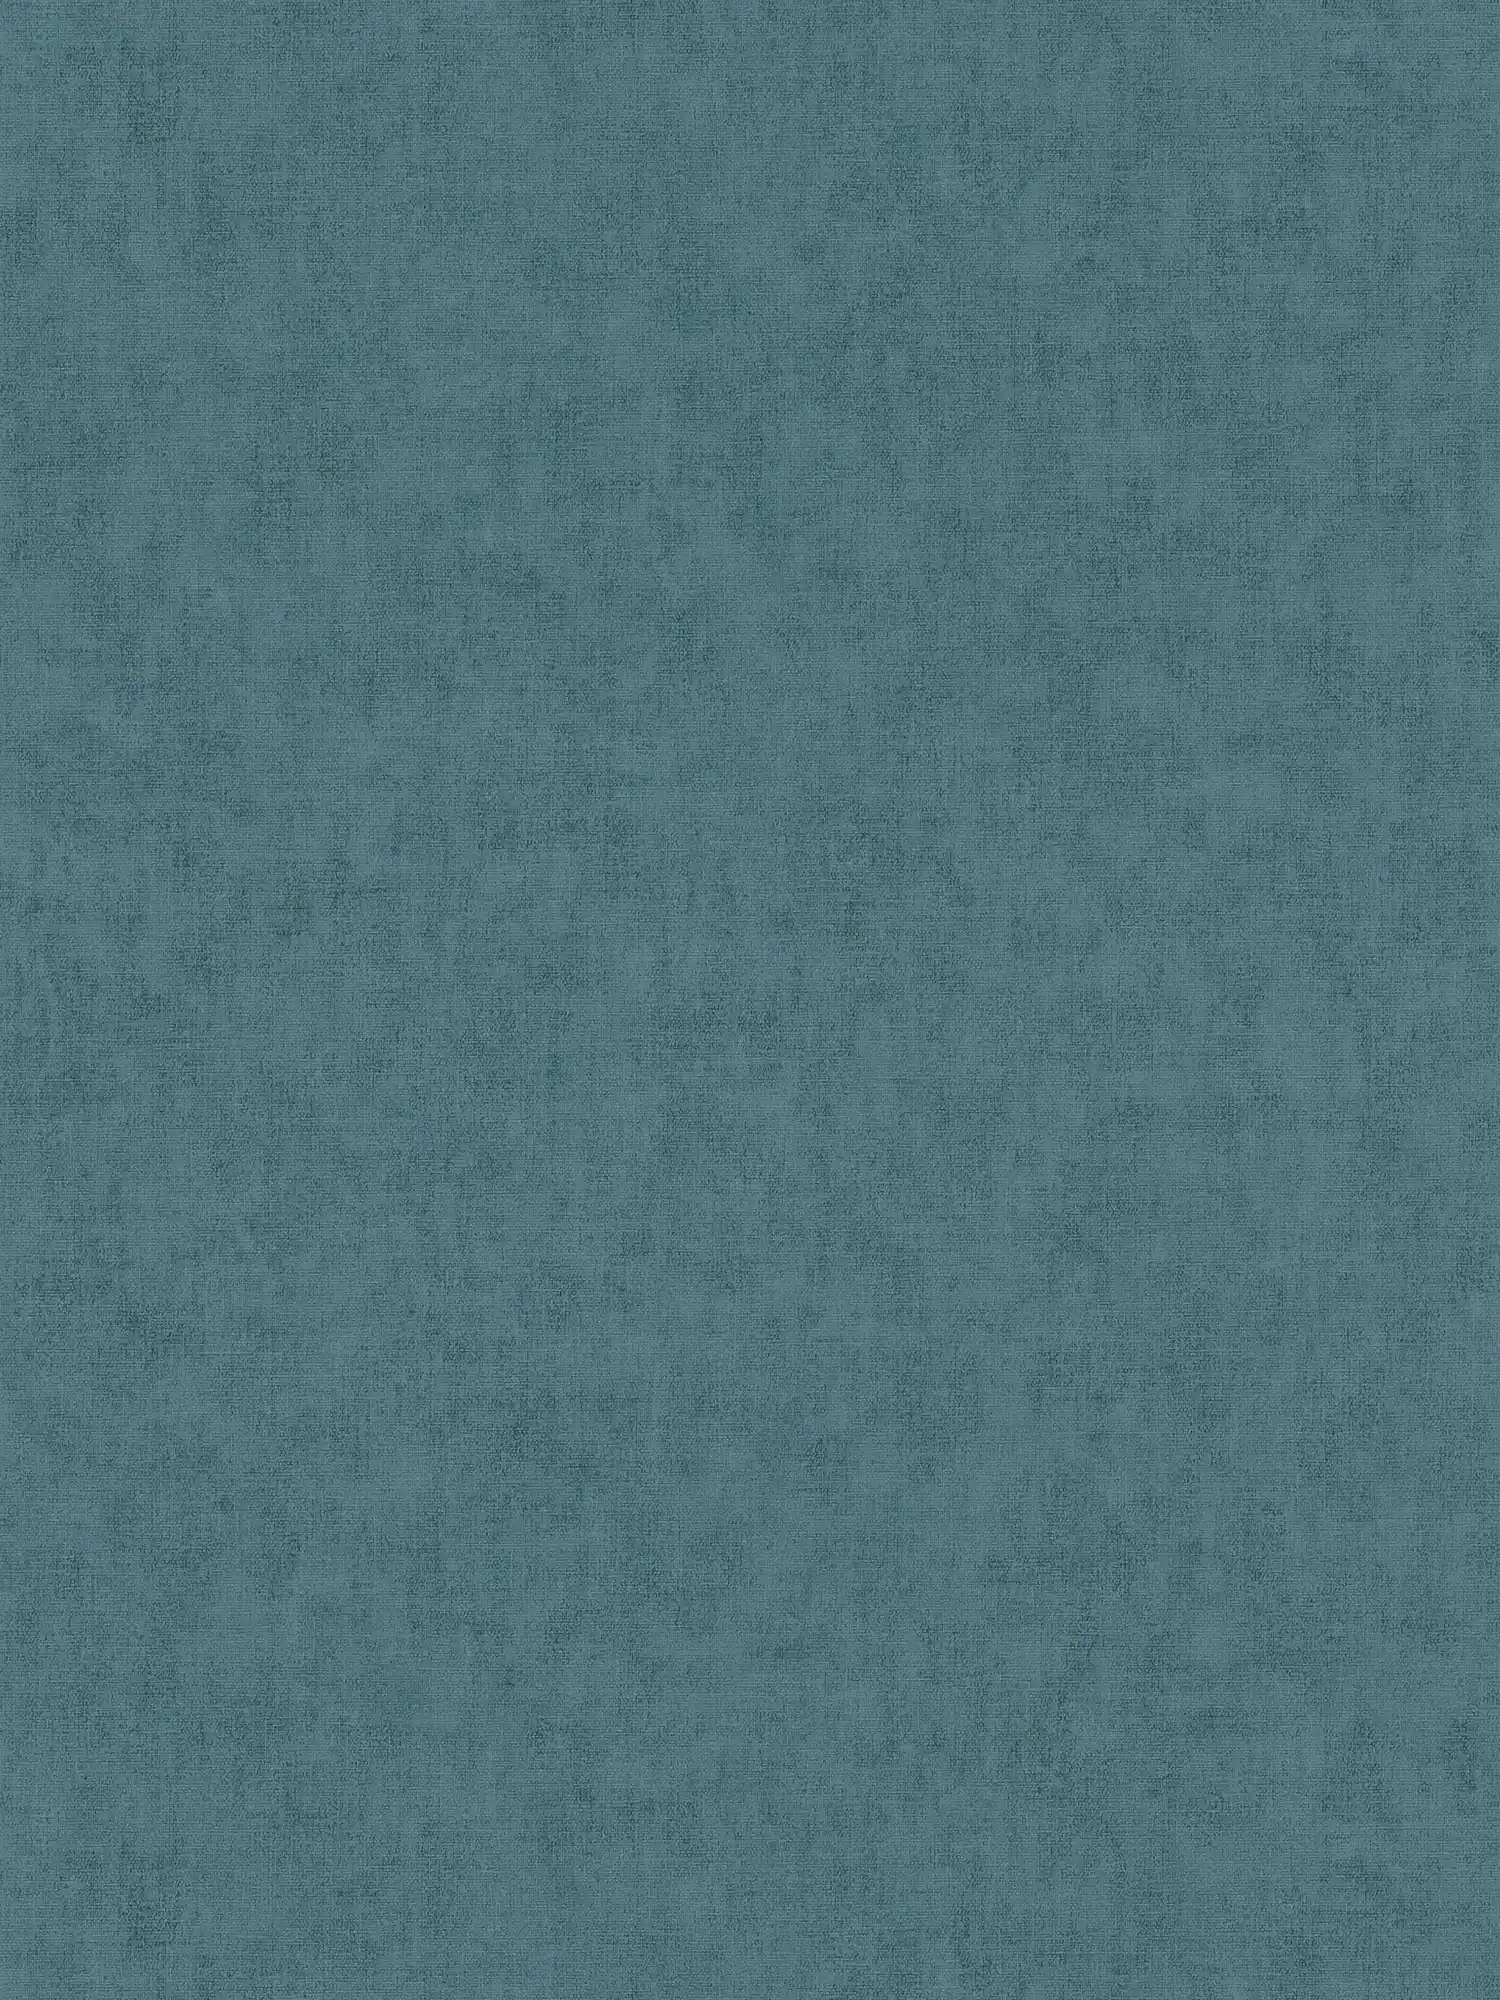 Scandinavische stijl vliesbehang textiel look - blauw, grijs
